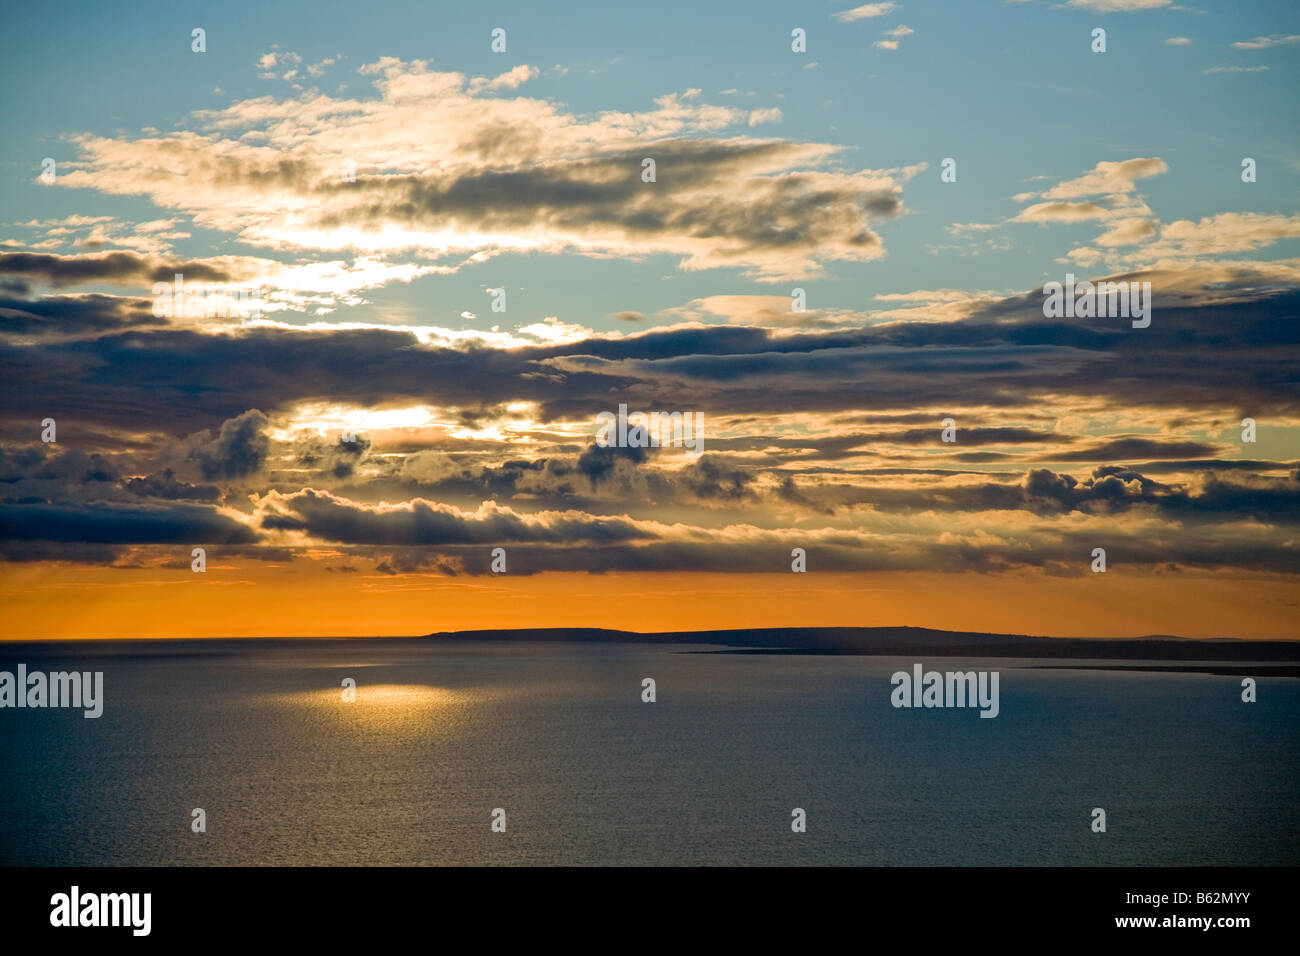 Coucher de soleil sur l'océan Atlantique à partir de la côte du comté de Clare, Irlande. Banque D'Images